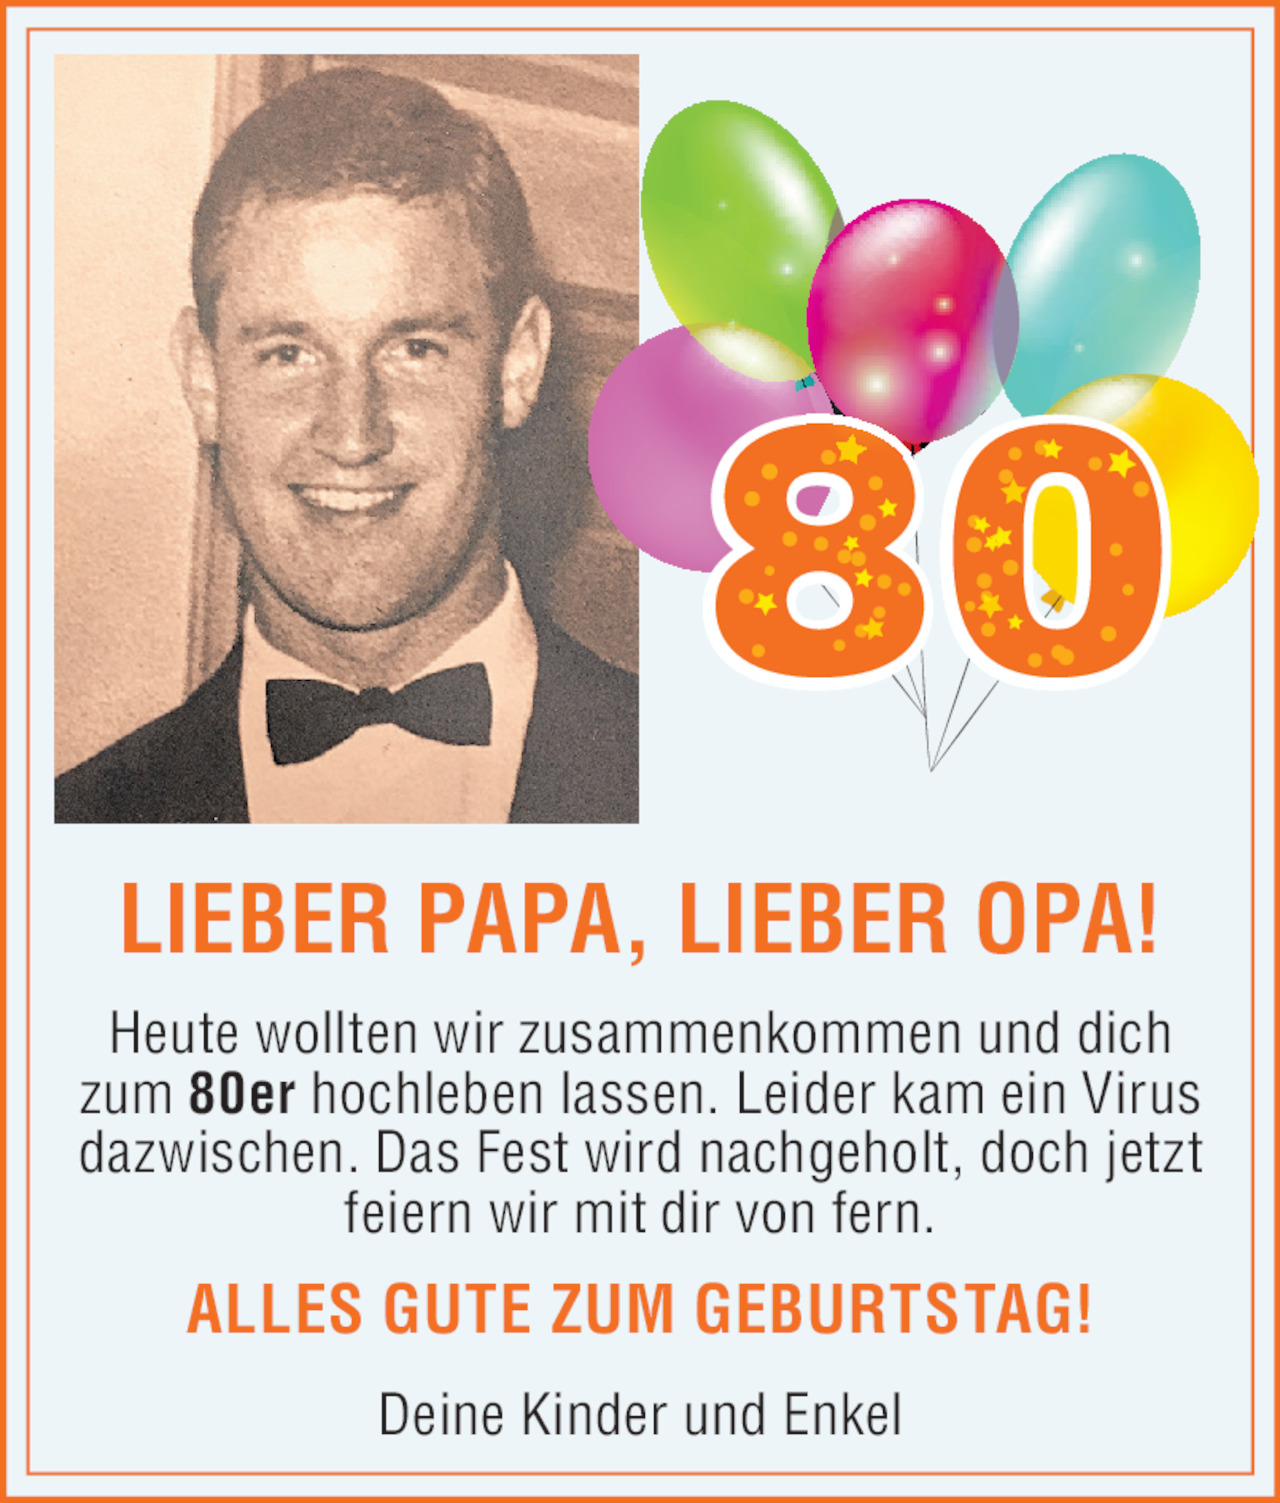 Herzlichkeit Von Lieber Papa 80 Geburtstag Vom 02 05 Tiroler eszeitung Online